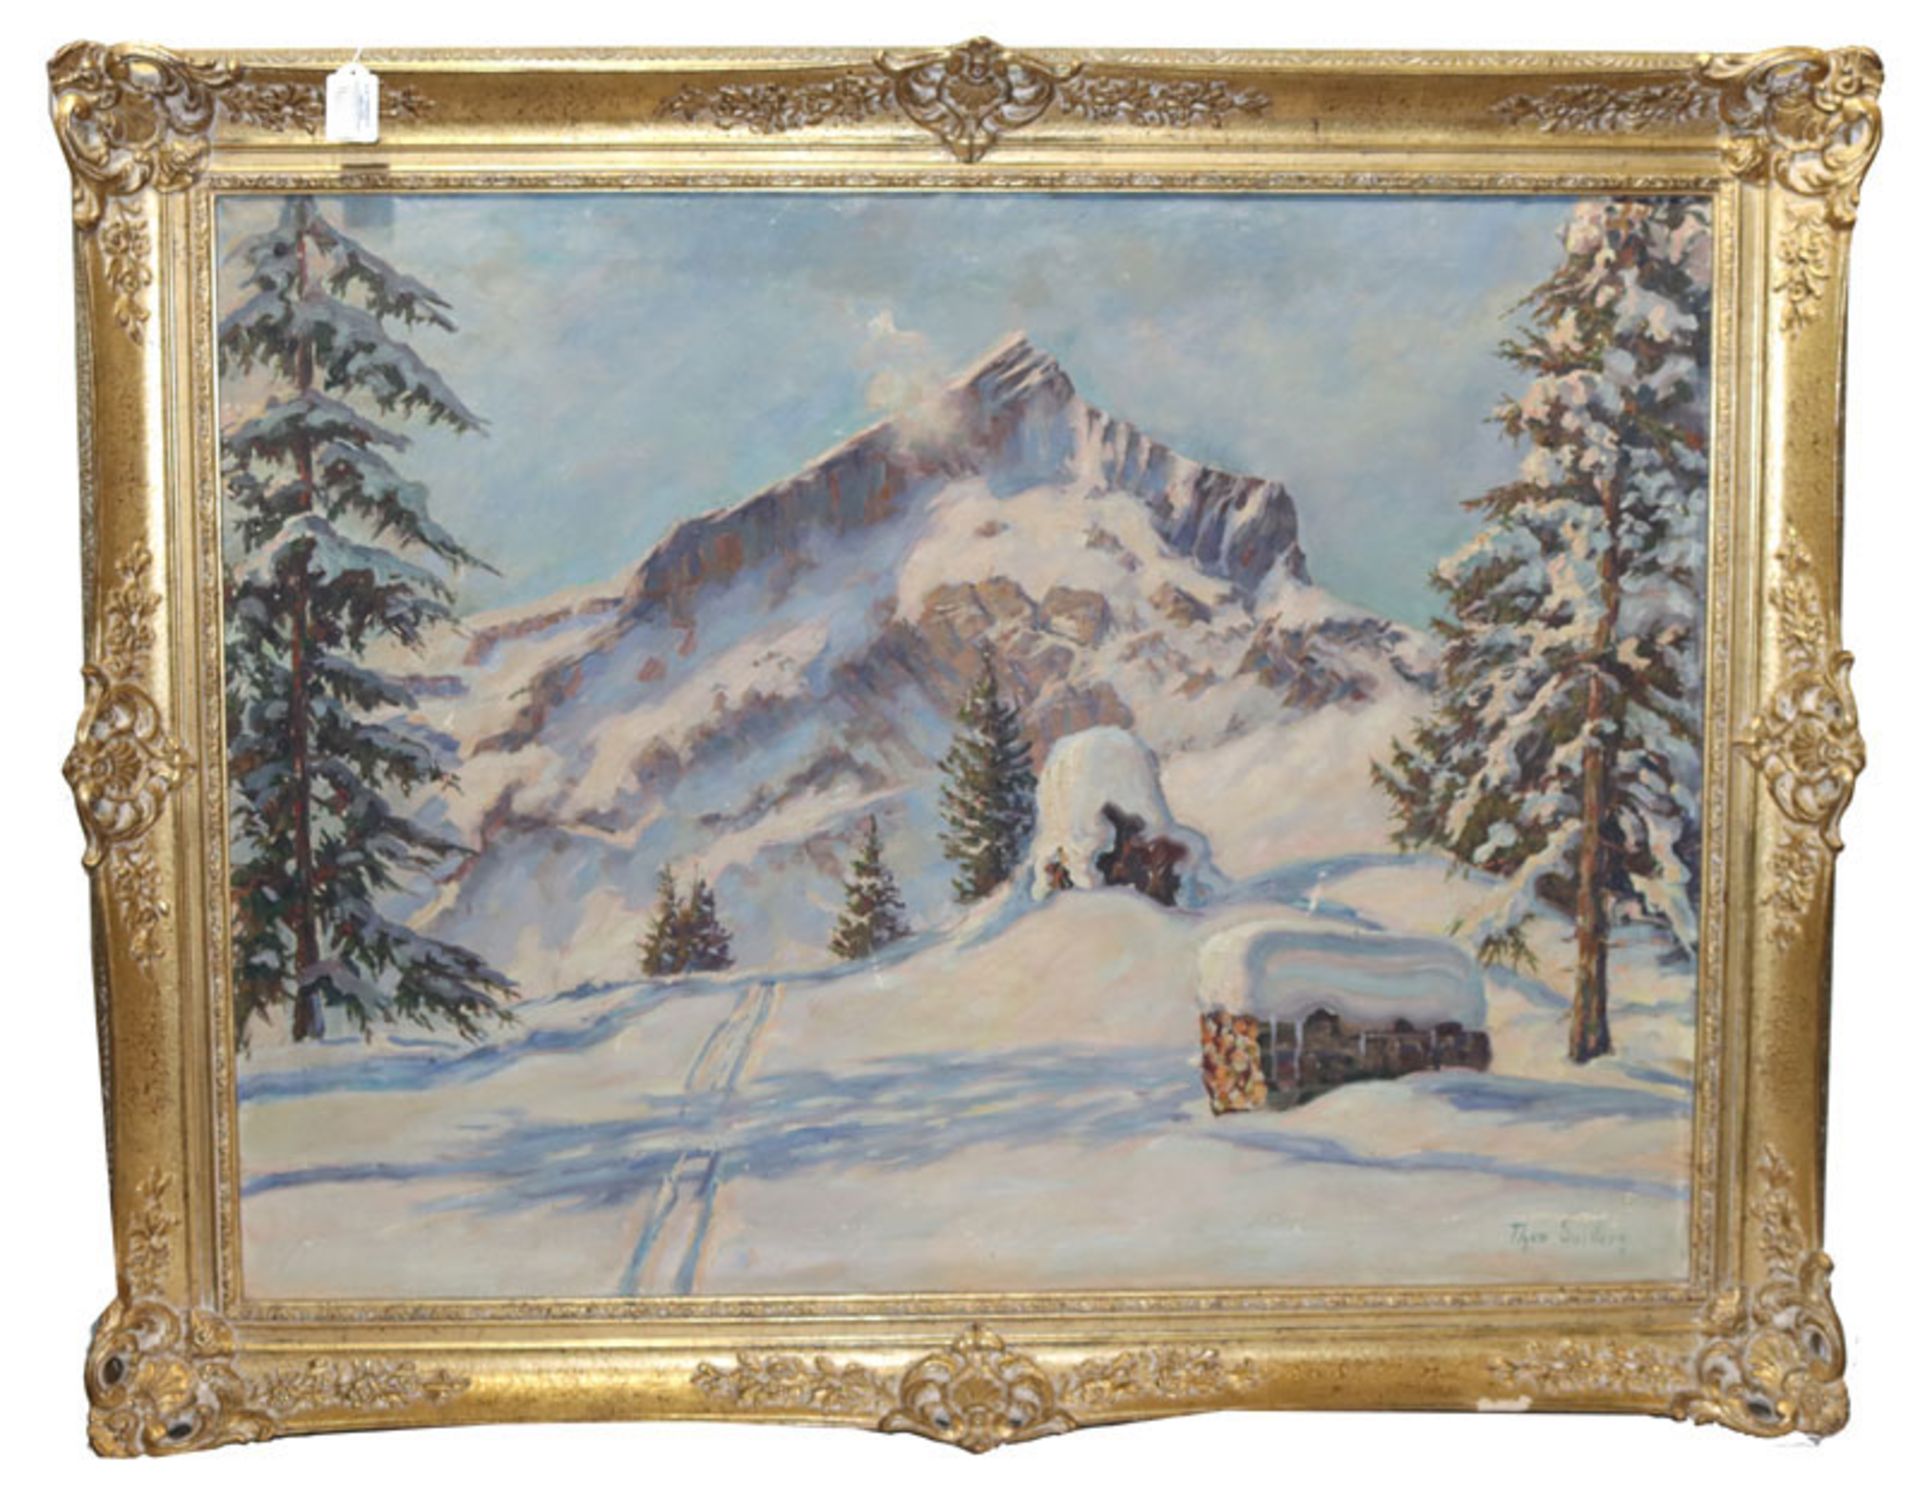 Gemälde ÖL/LW 'Alpspitze im Winter', signiert Theo. Guillery, Theodor Guillery, * 1900 München +